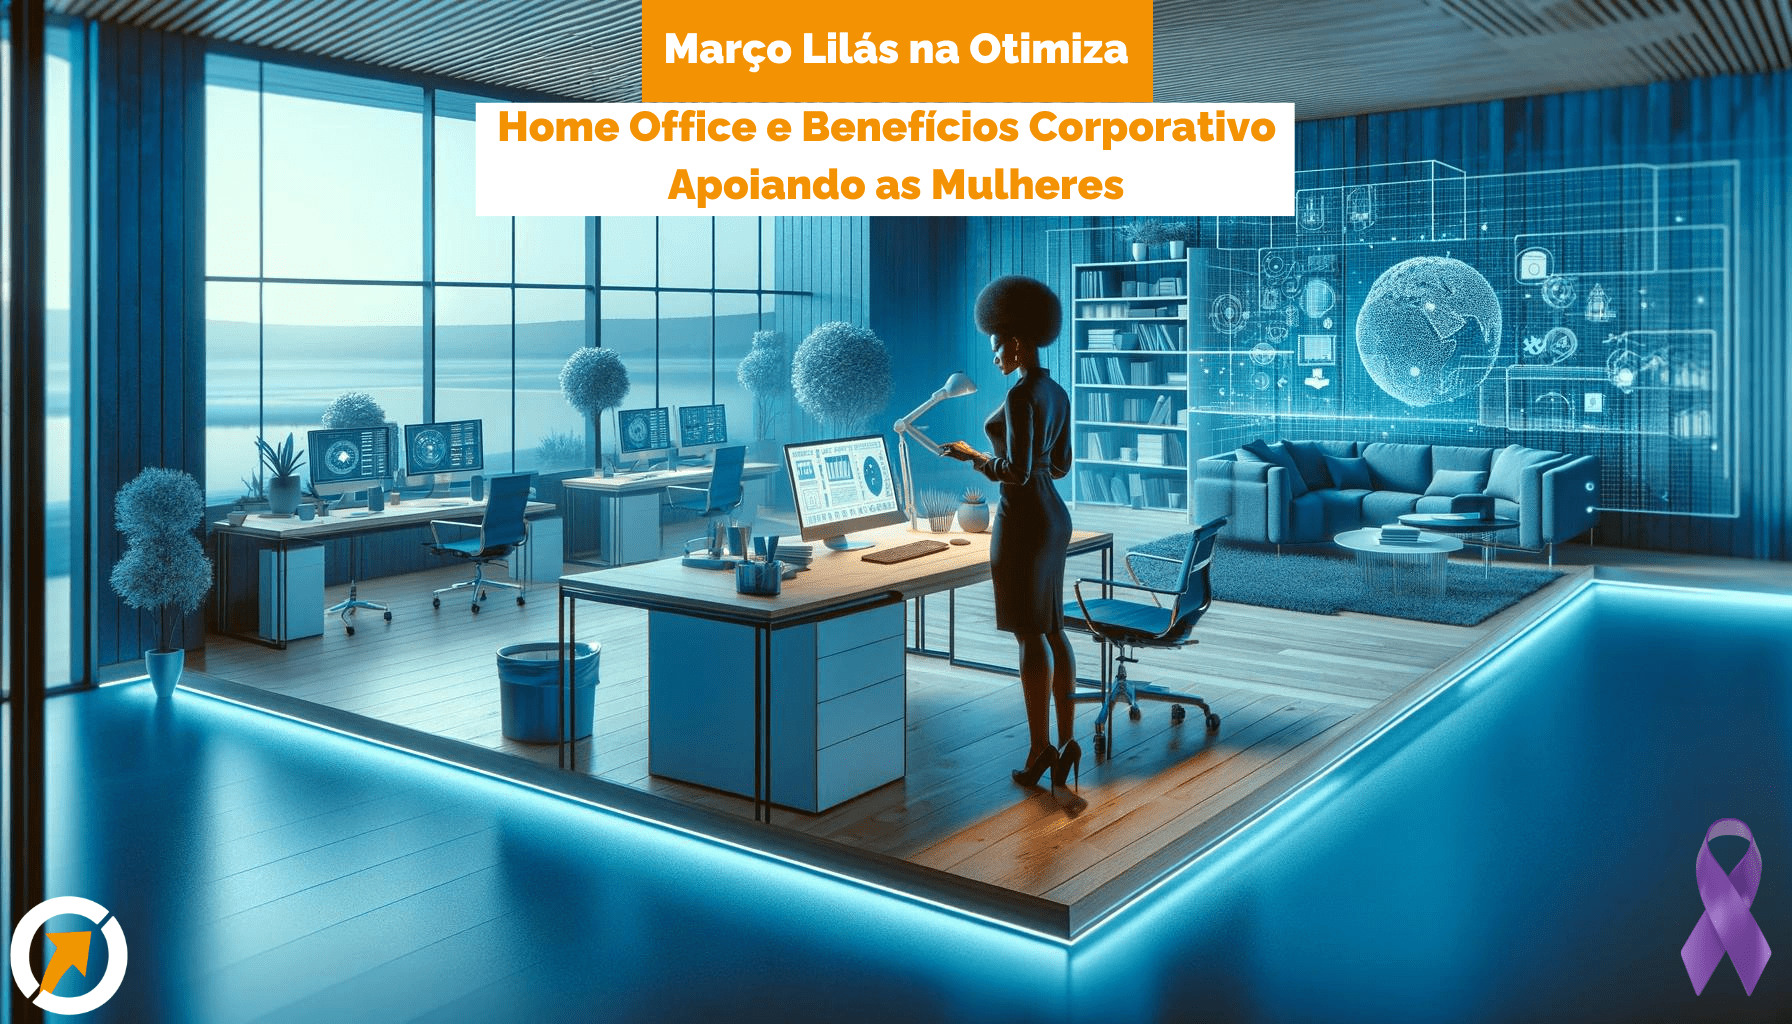 Uma mulher negra trabalha em um ambiente de escritório moderno que mescla elementos de home office e benefícios corporativos, iluminado em tons de azul futurista, simbolizando o equilíbrio entre vida profissional e pessoal.